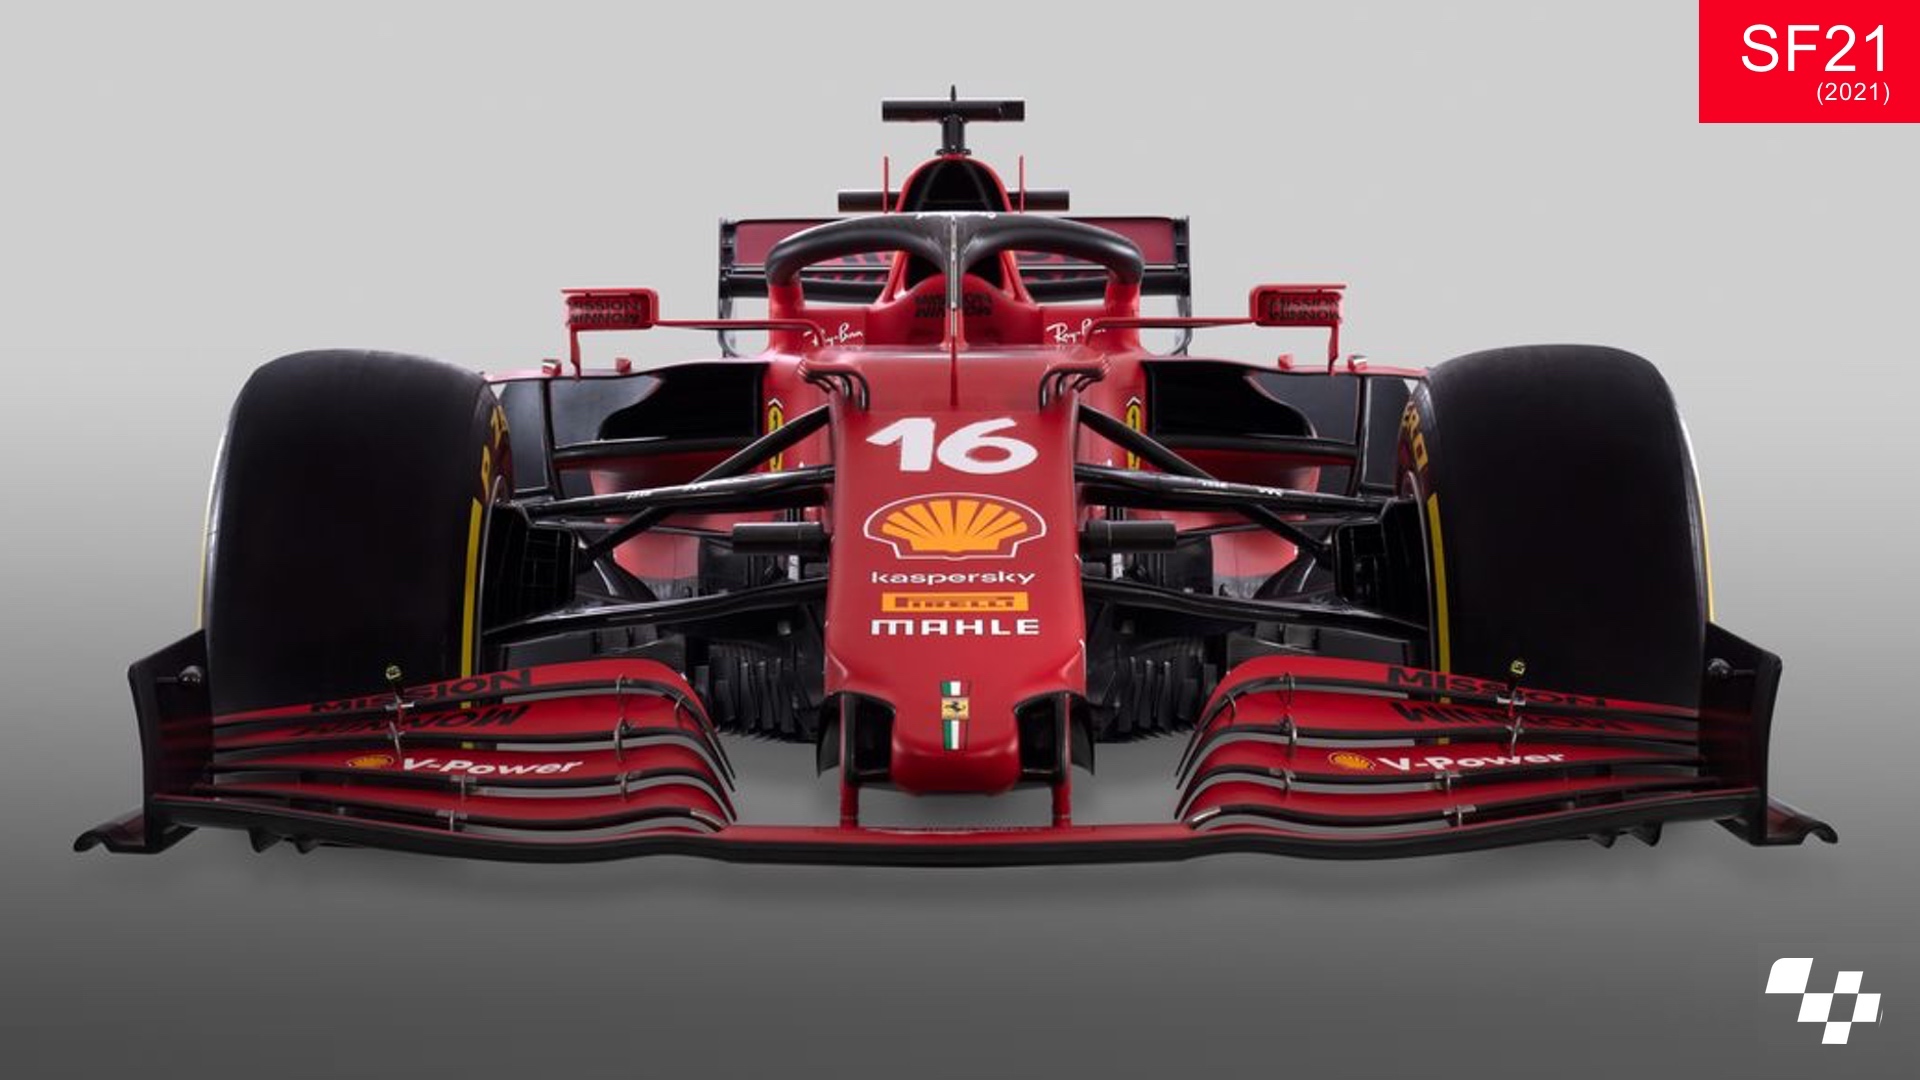 Sliders: Compare The 2022 Ferrari F1 75 And 2021 SF21